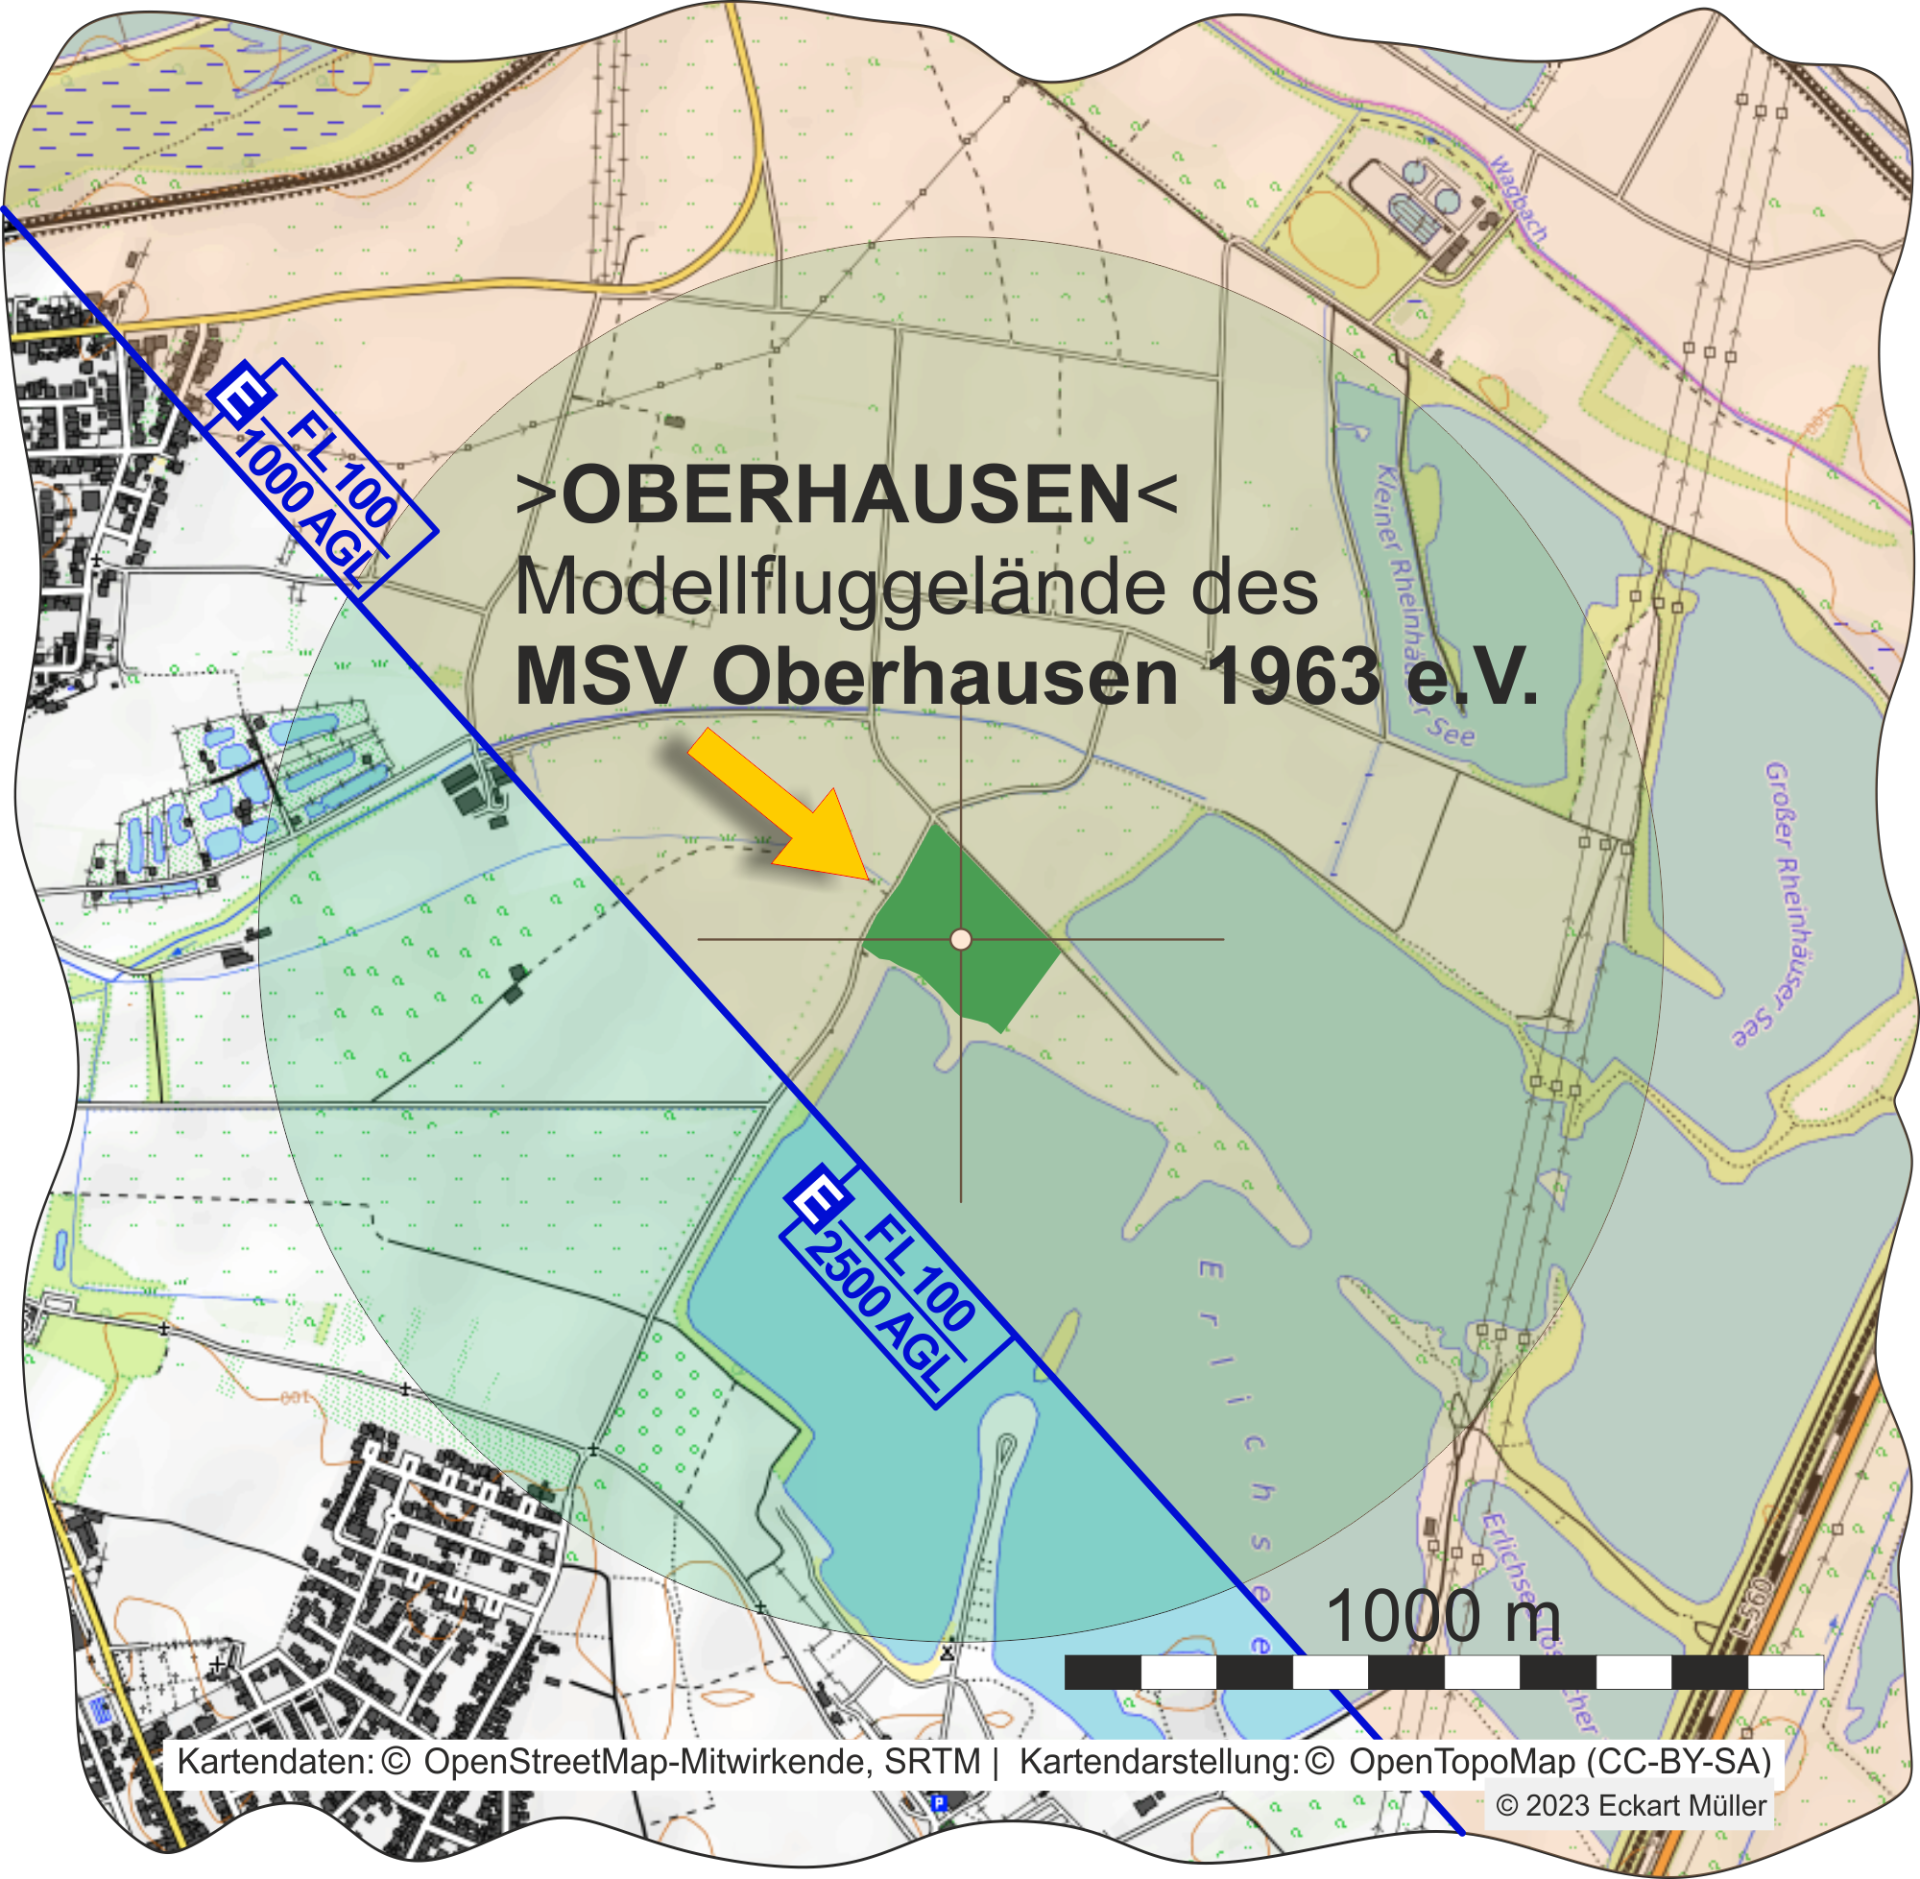 3-OBERHAUSEN - MSV Oberhausen 1963 eV_2000.png